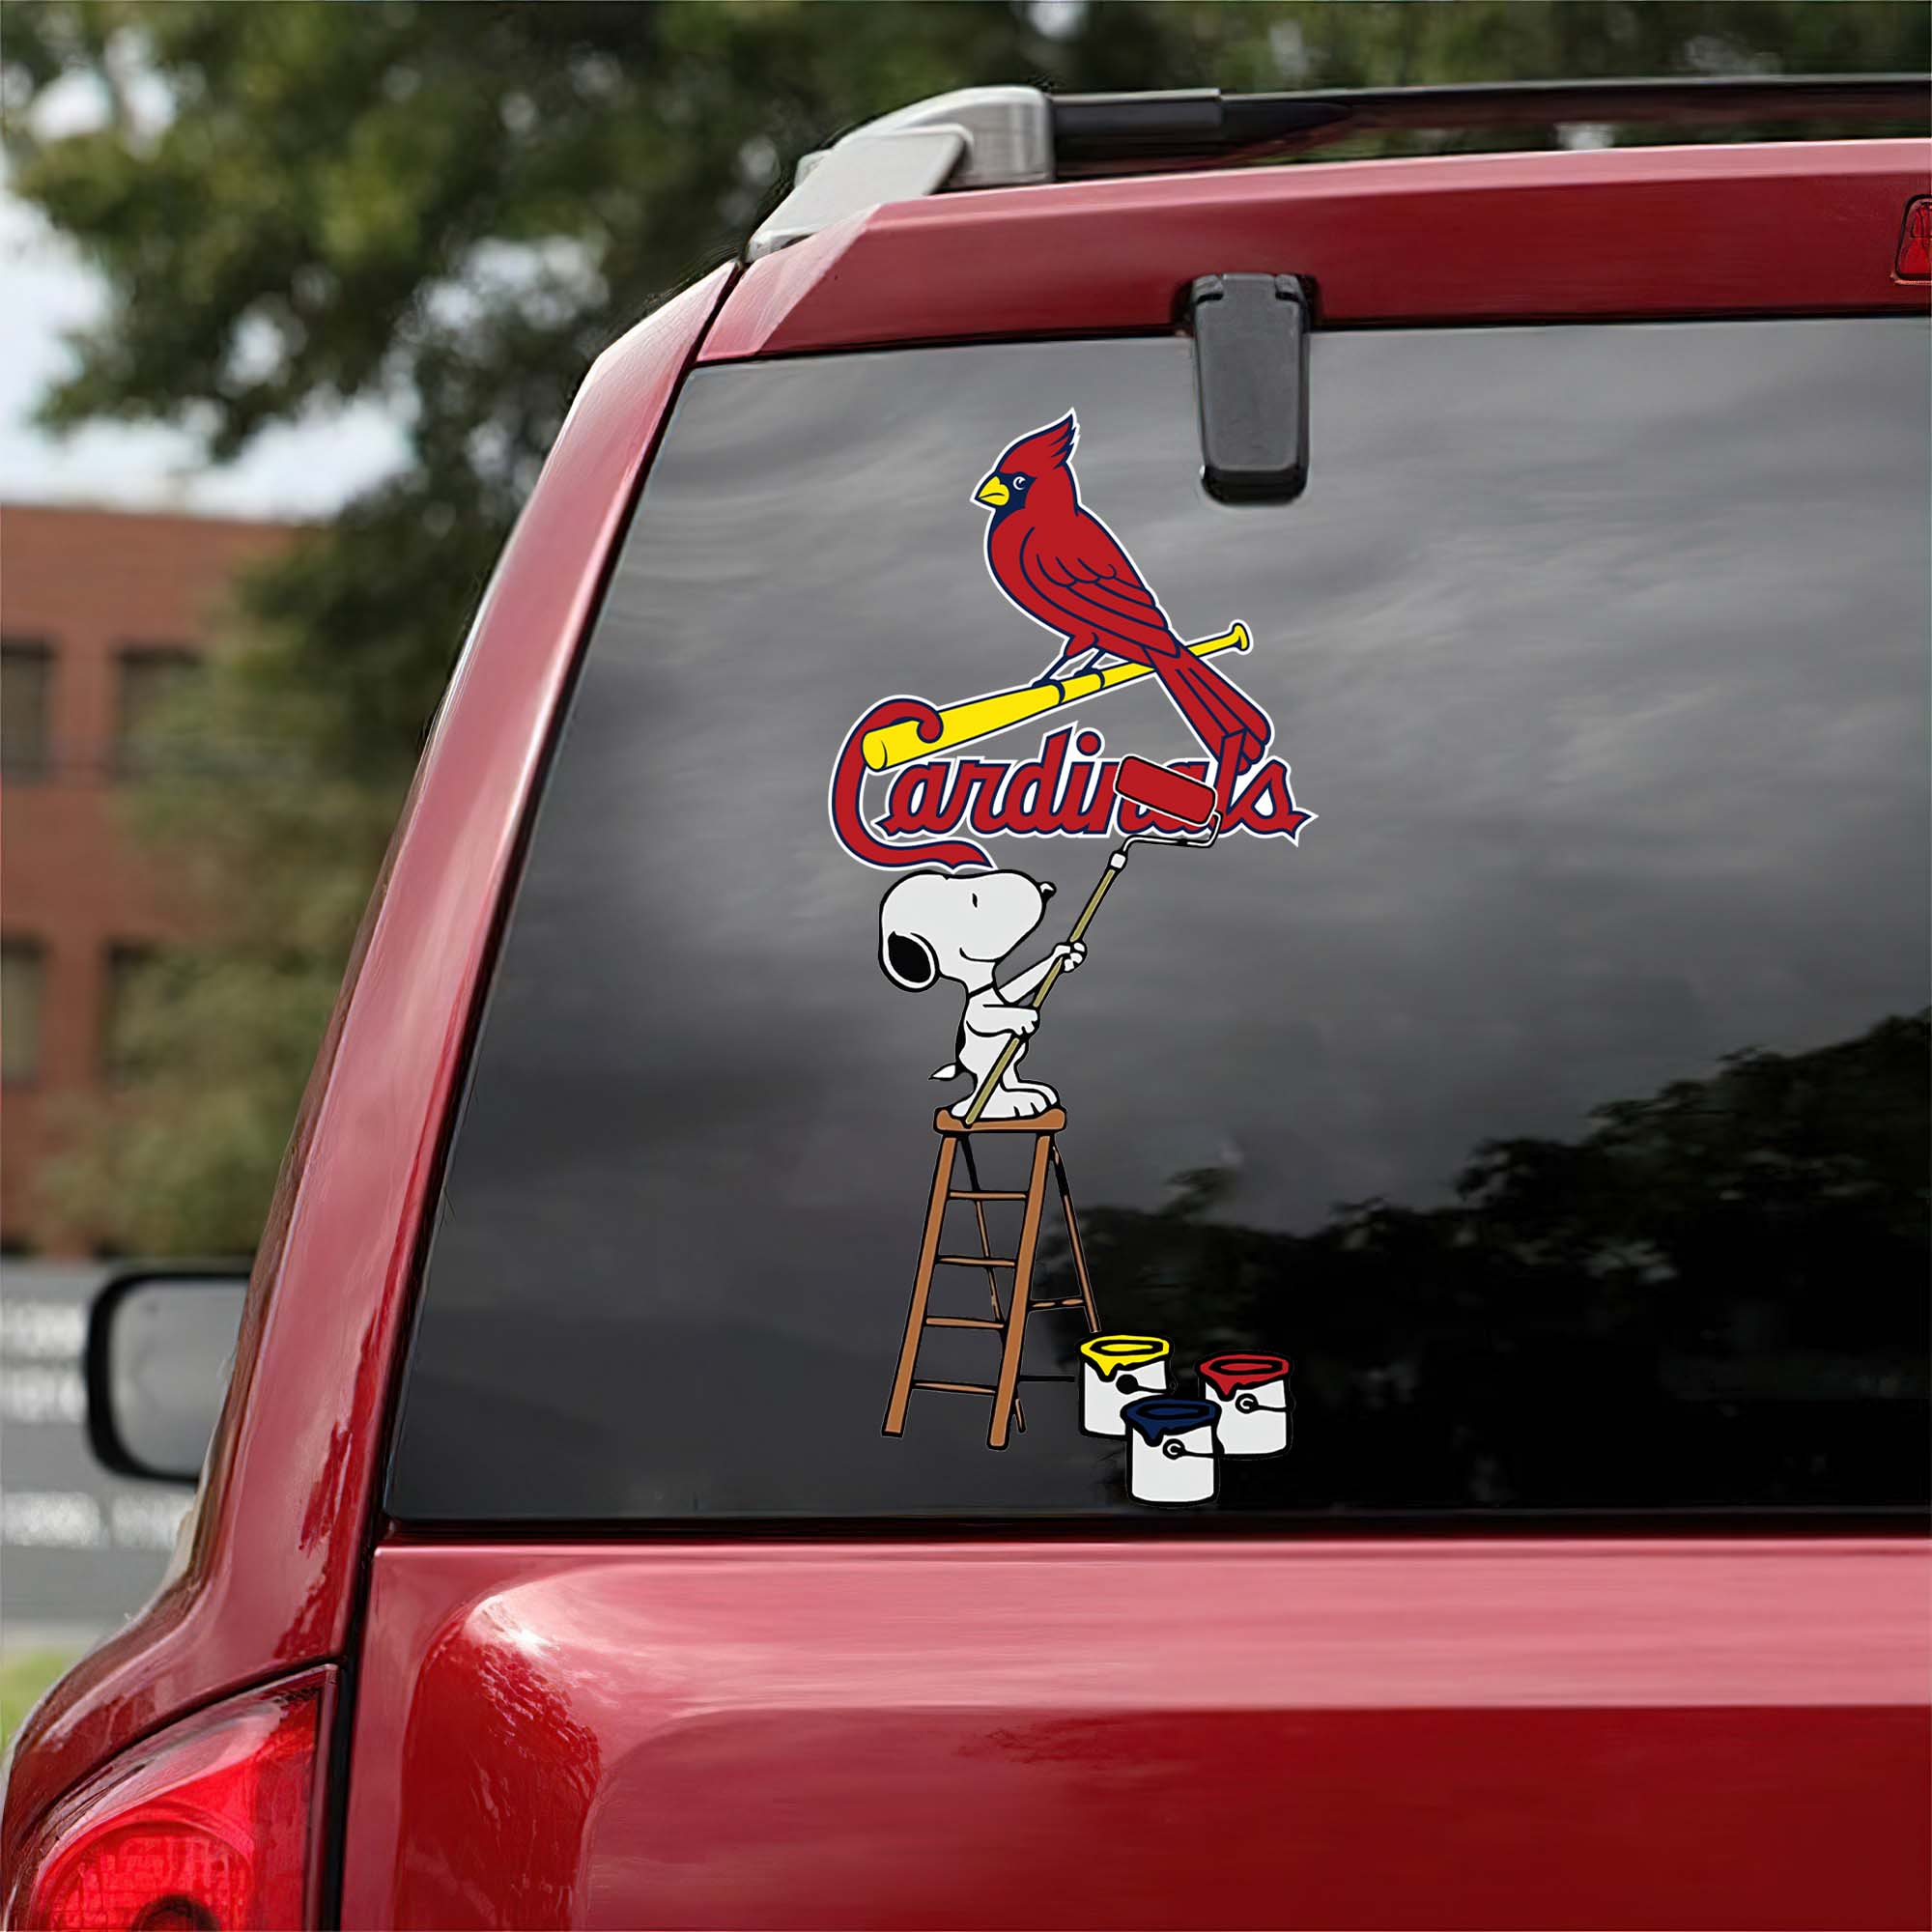 St. Louis Cardinals Mix Snoopy Car Decal Art PT54802